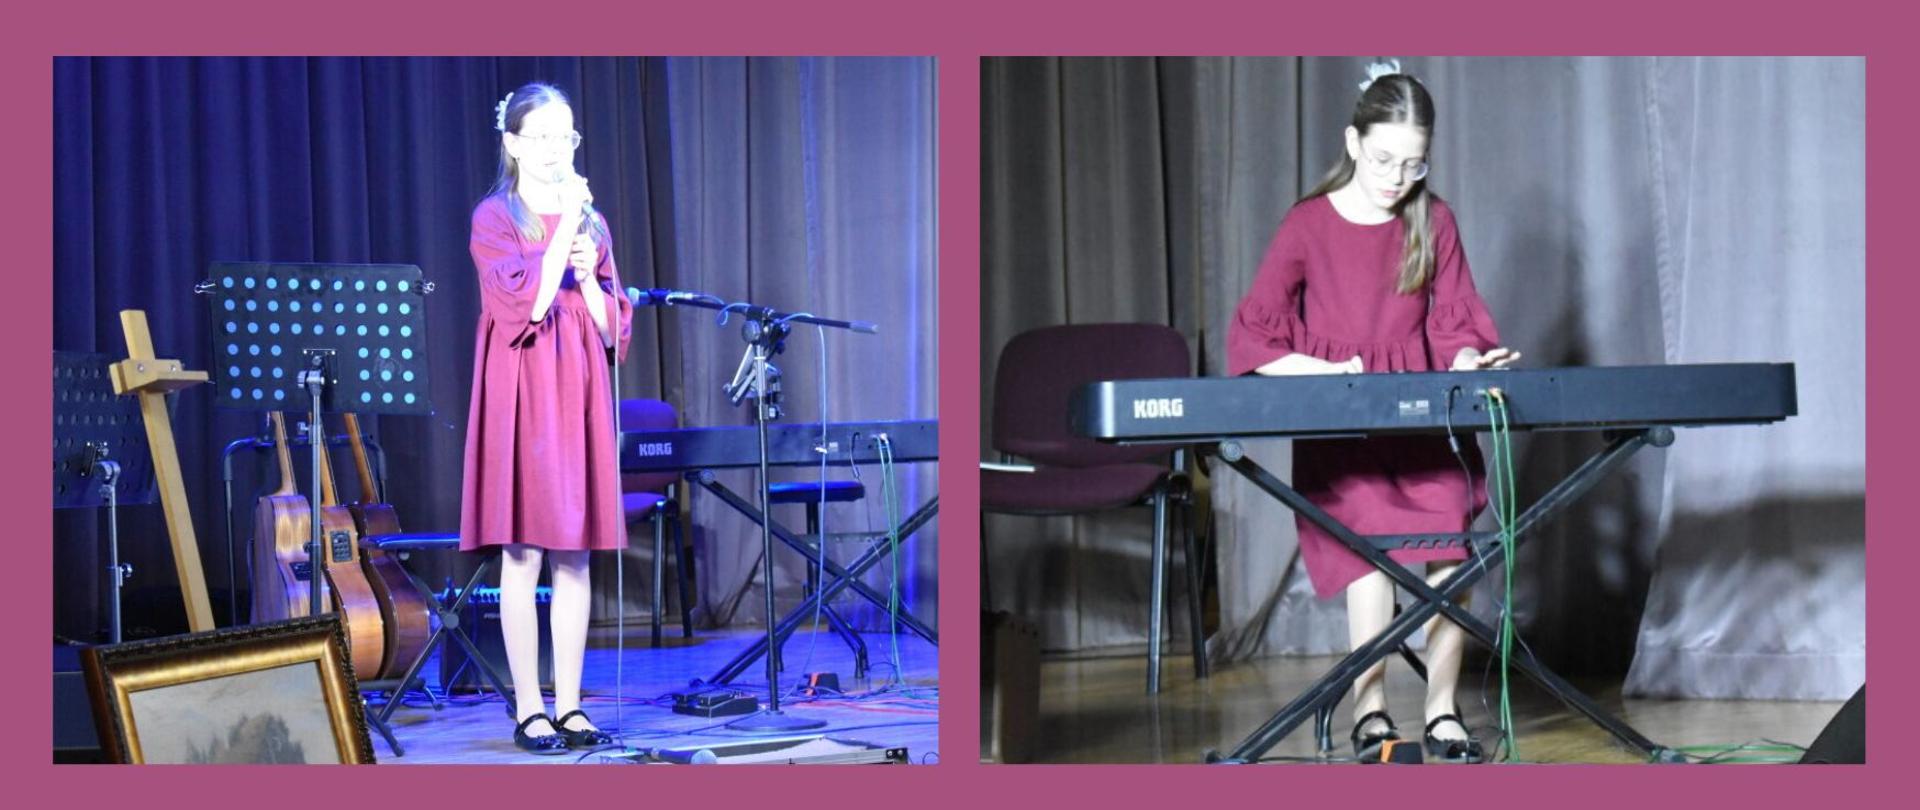 Projekt na tle w kolorze wrzosowym. Po lewej zdjęcie uczennicy ubranej w sukienkę w kolorze tła (wrzosowym) stojącej i śpiewającej do mikrofonu. Dookoła dziewczynki znajdują się kprzewody, statywy, pulpity do nut, keyboard, gitary, sztaluga i obraz. Scena jest podświetlona na niebiesko. Z tyłu są zanunięte kotary w kolorze granatowym. Po prawej znajduje się zdjęcie tej samej uczennicy grającej na keyboardzie. 